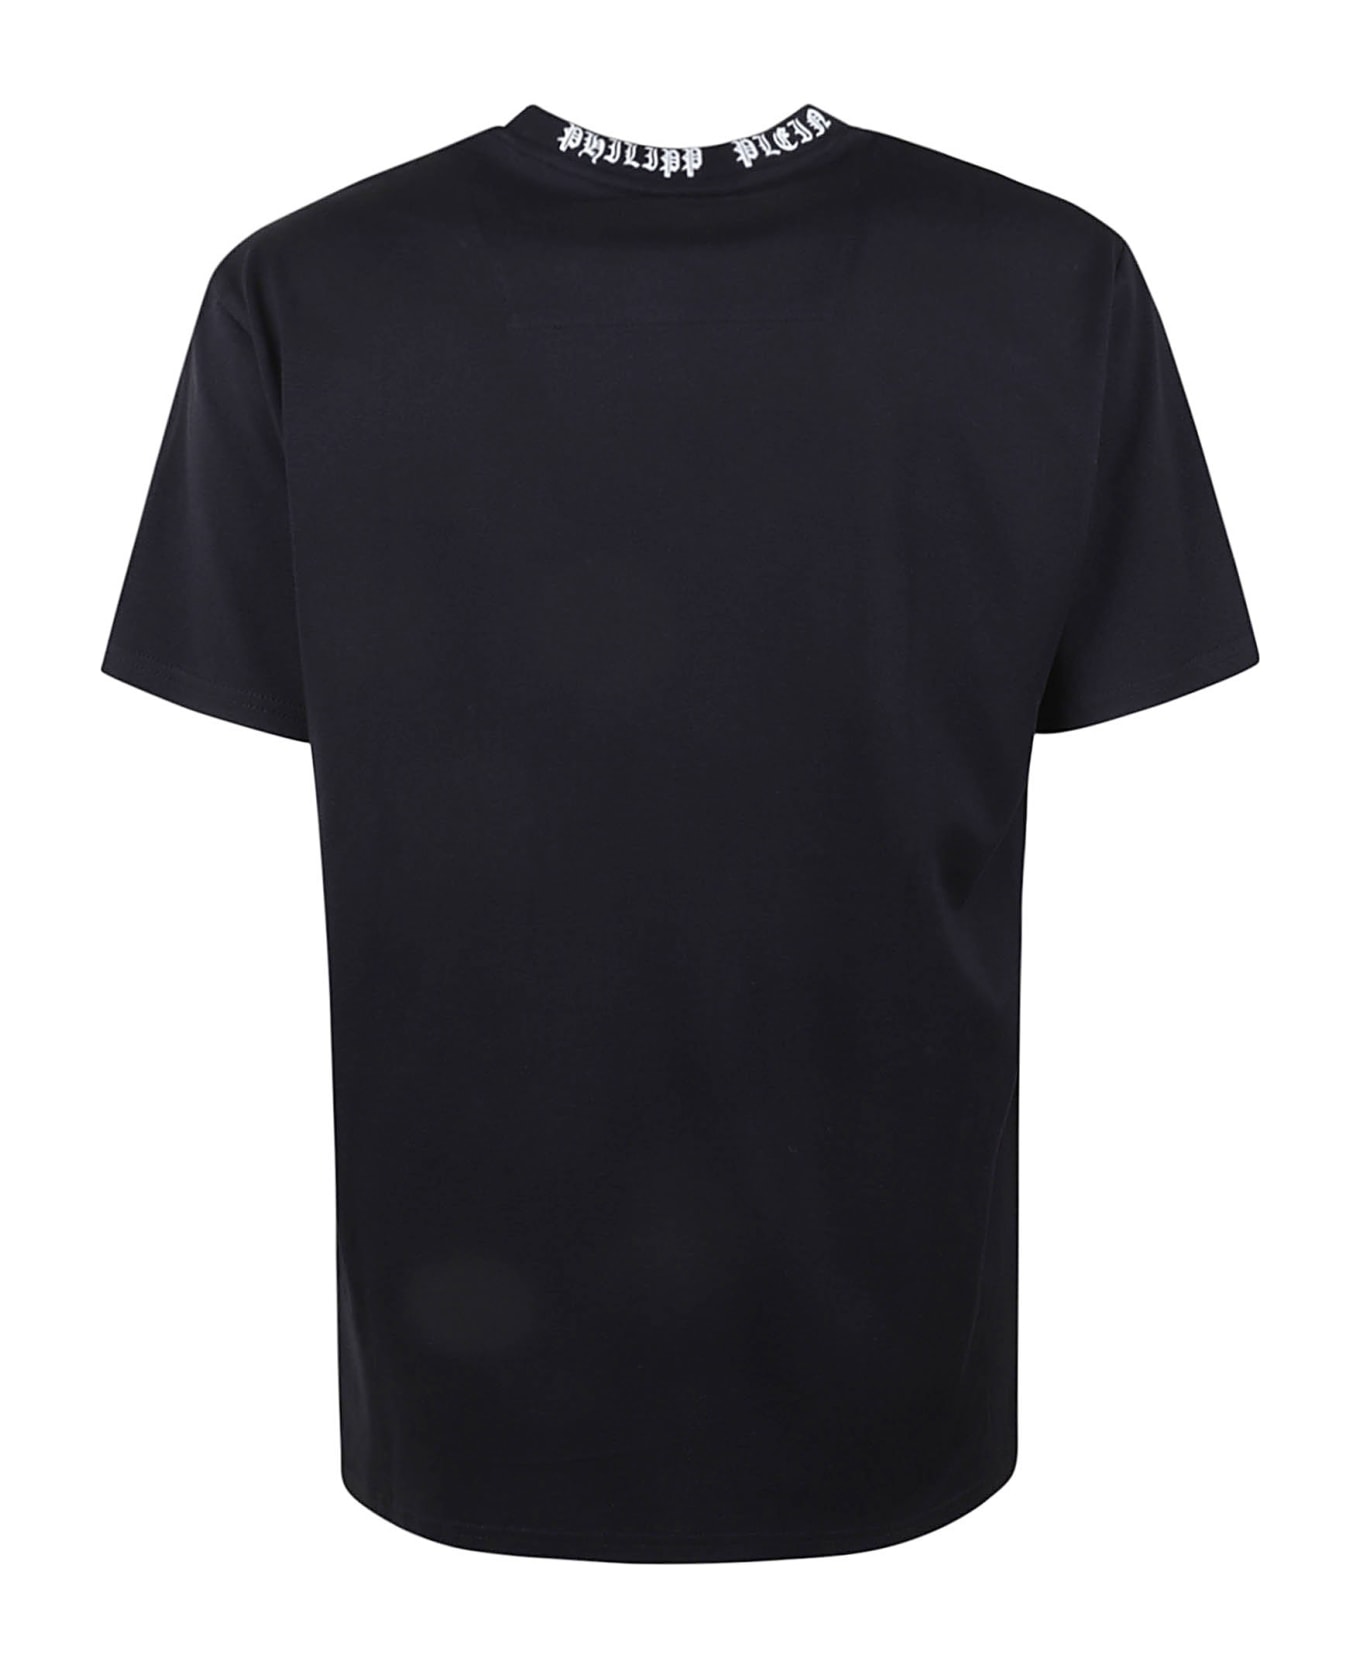 Philipp Plein Gothic Plein Round Neck T-shirt | italist, ALWAYS LIKE A SALE